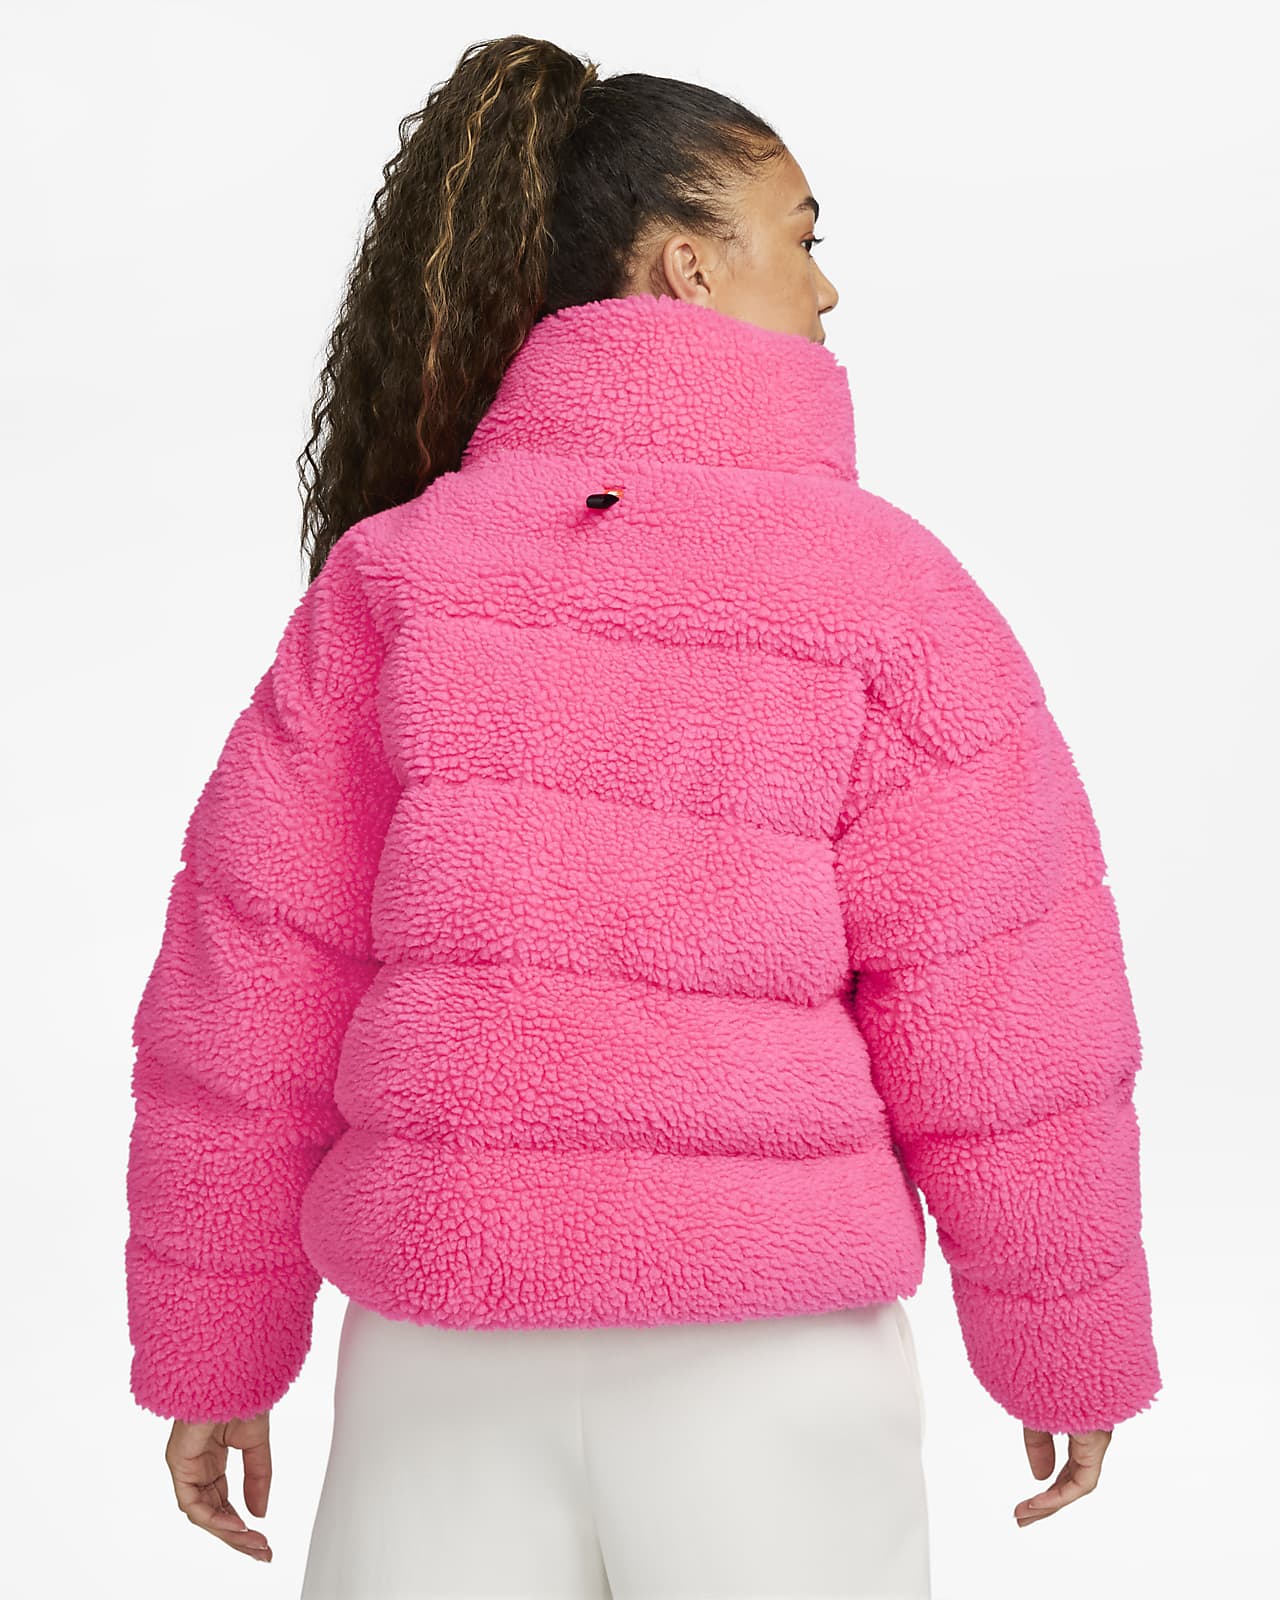 Nike Sportswear Therma-FIT City Women's Synthetic Fill High-Pile Fleece Jacket. Nike LU